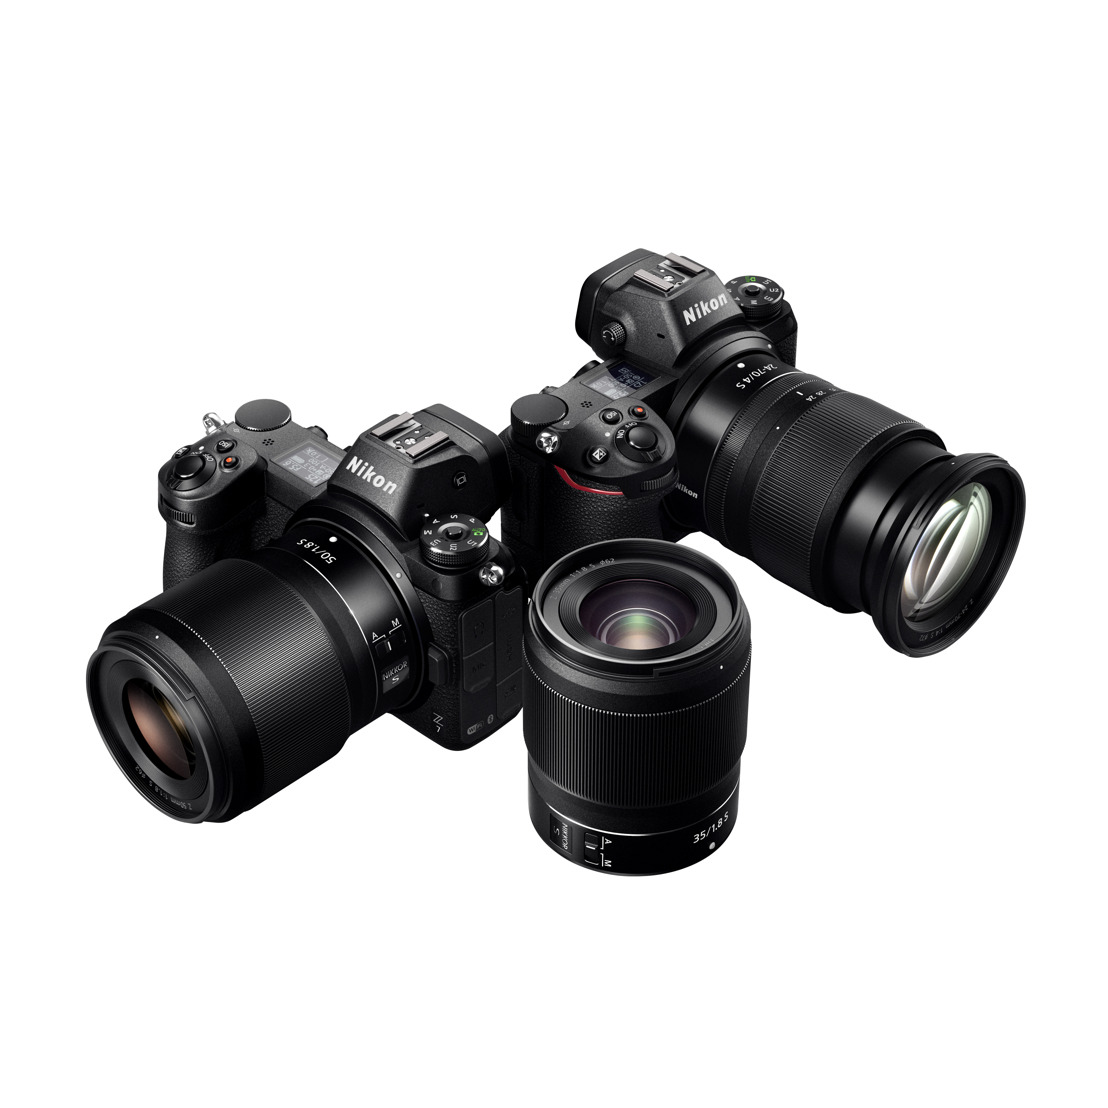 Nikon présente son nouveau système de monture Z et lance deux appareils photo hybrides plein format : le Z 7 et le Z 6